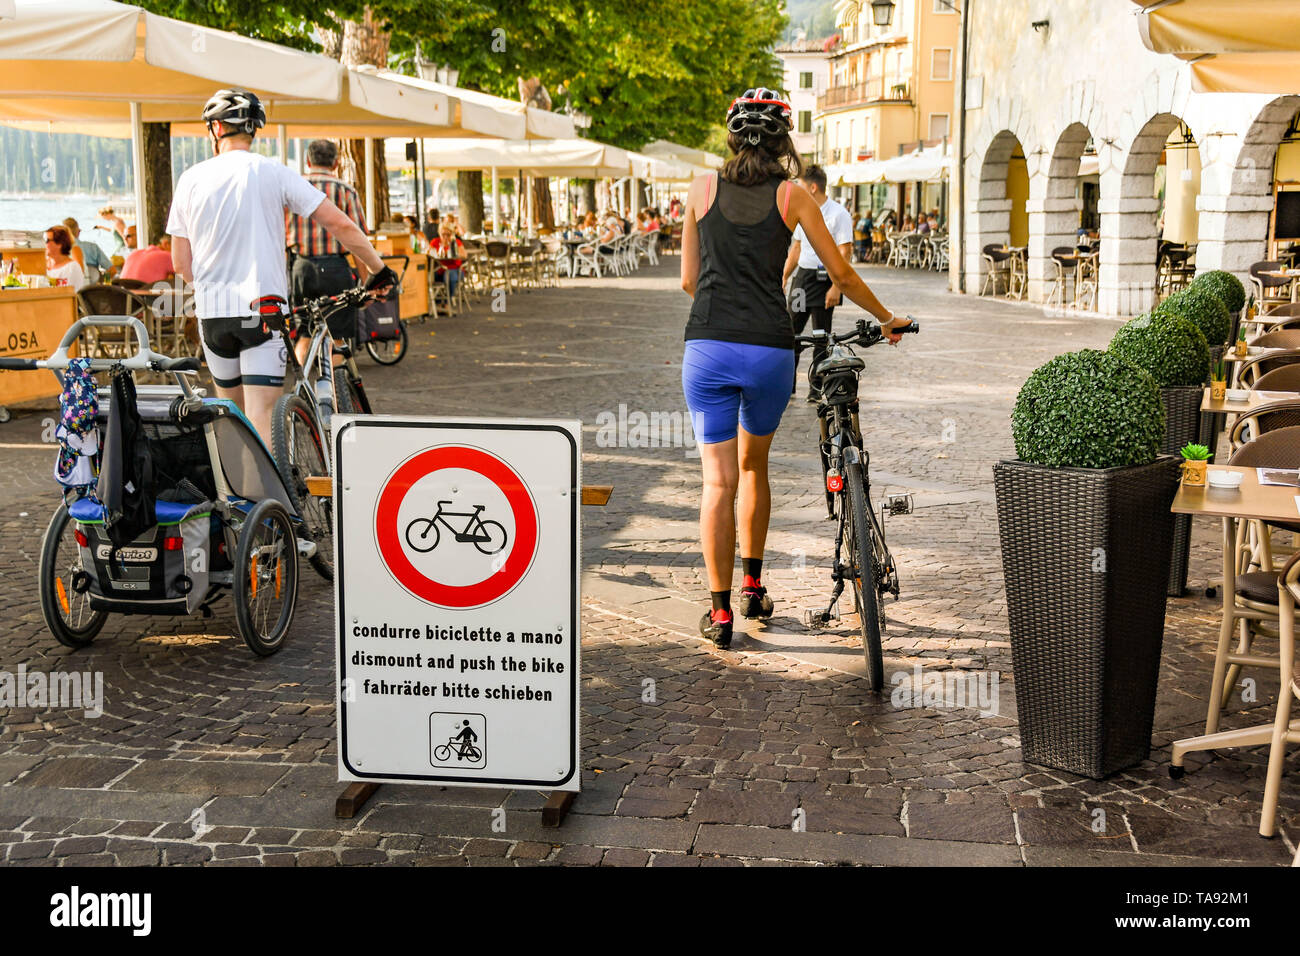 GARDA LAGO DI GARDA ITALIA - Settembre 2018: due persone osservano i requisiti sul segno di smontare e spingere le loro biciclette sul lungomare di Garda Foto Stock